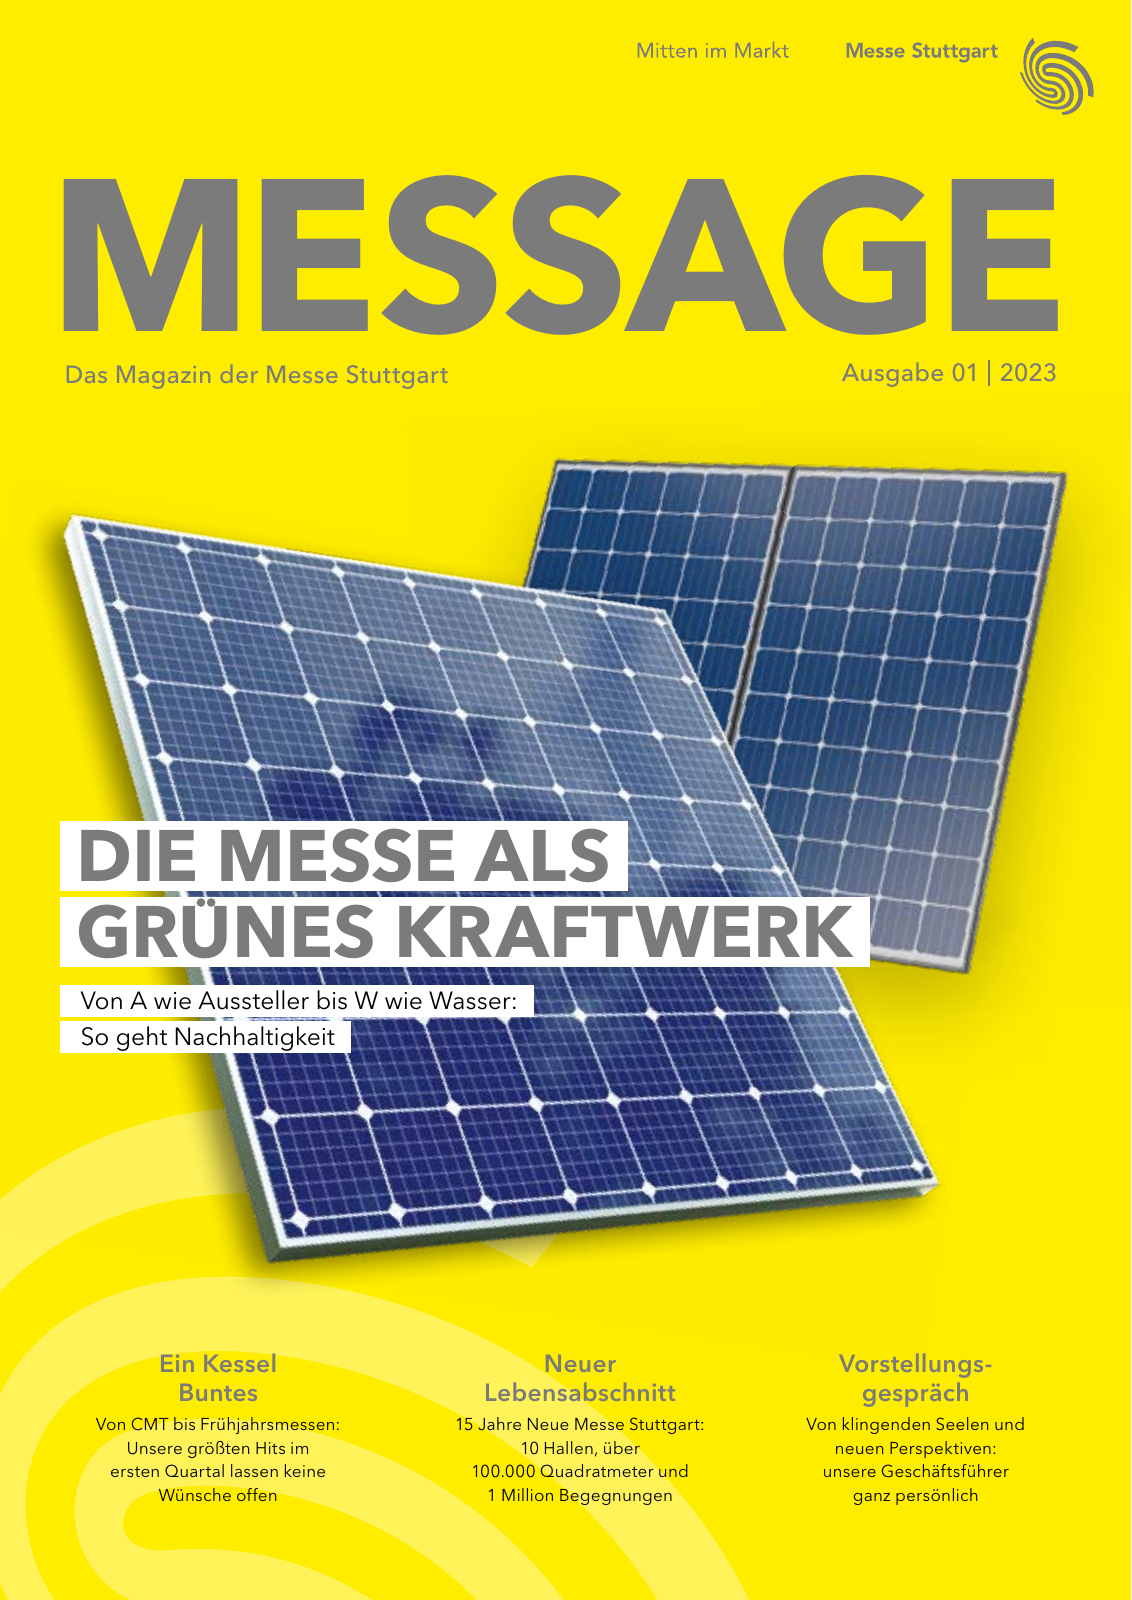 Vorschau MESSAGE - Das Magazin der Messe Stuttgart / Ausgabe 01 - 2023 Seite 1